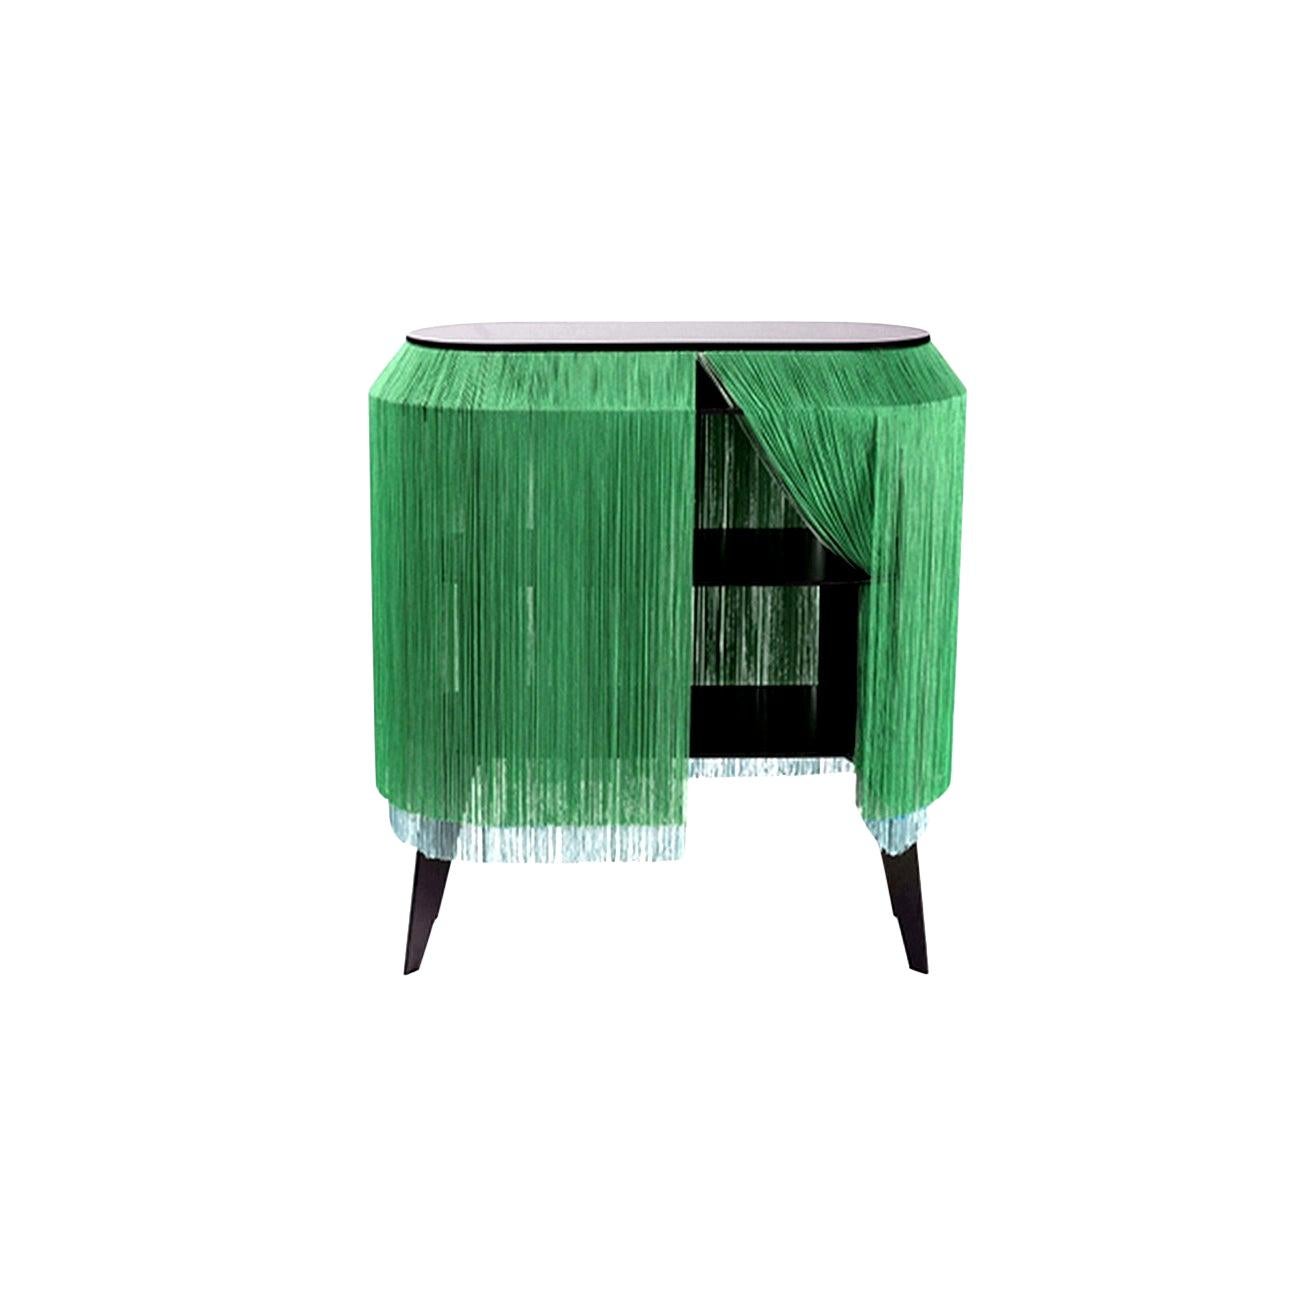 Table d'appoint/table de nuit à franges vertes, fabriquée en France